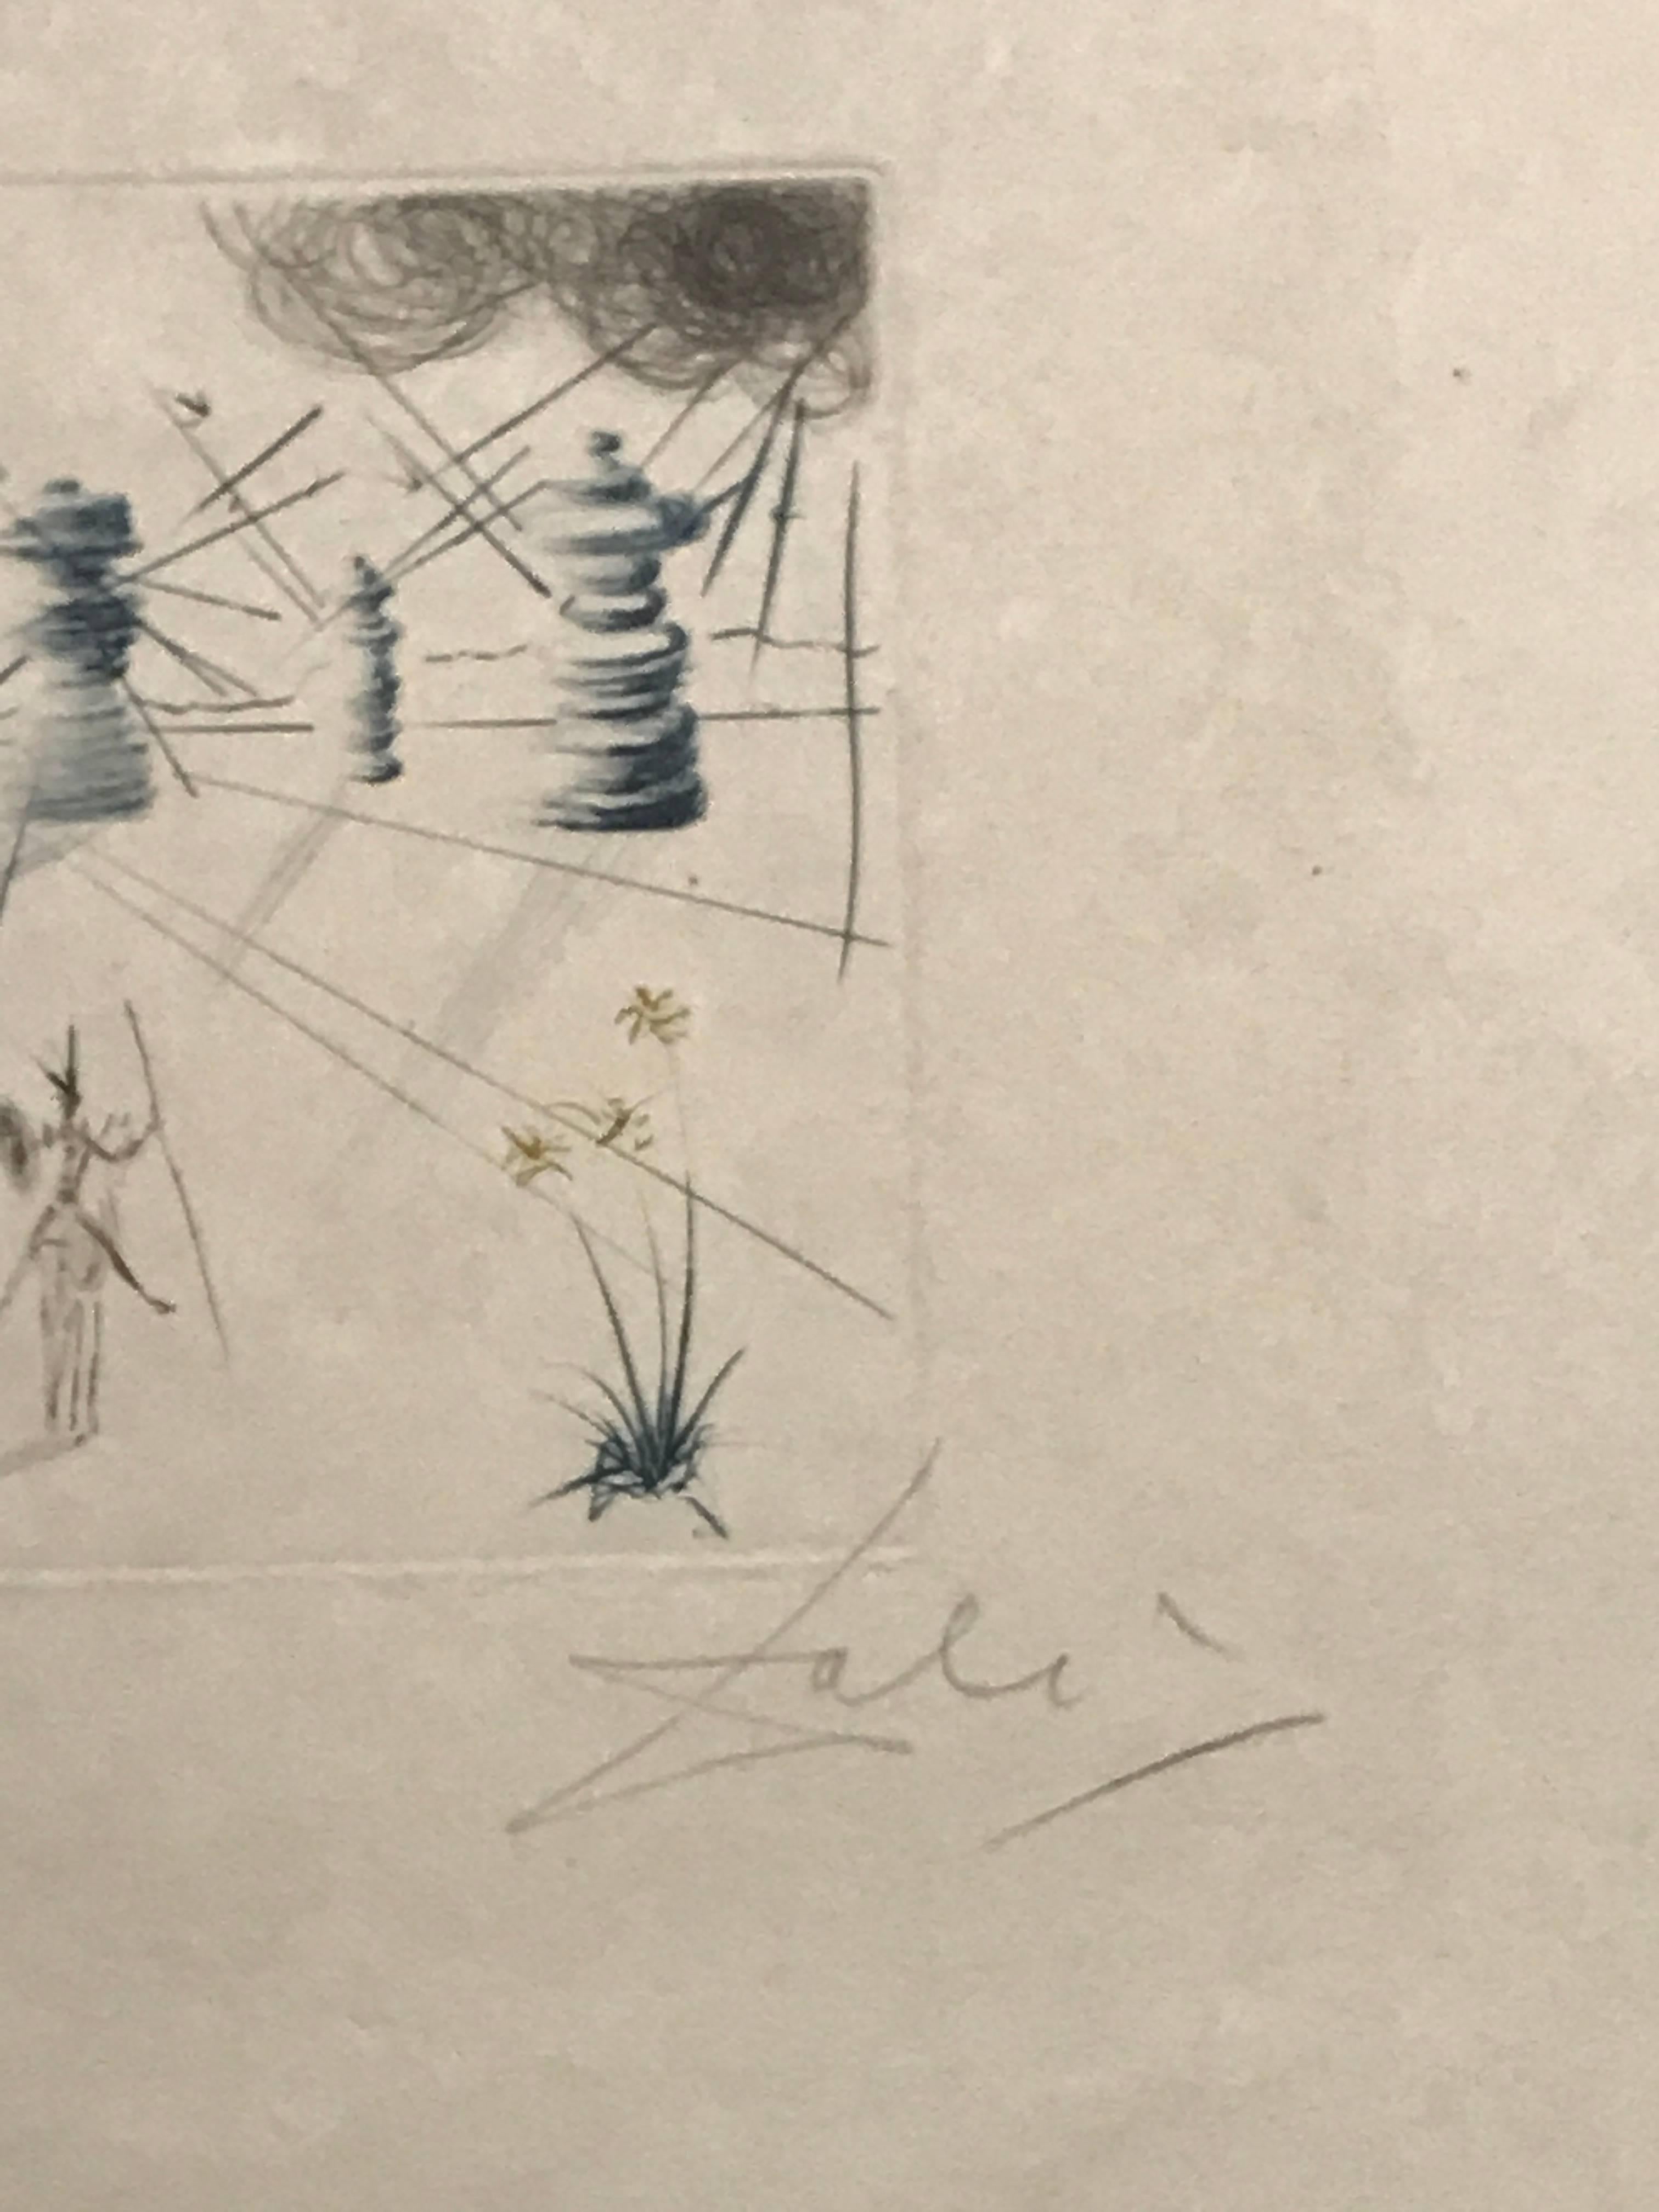 Don Quichotte et les Moulins à Vent - Print by Salvador Dalí